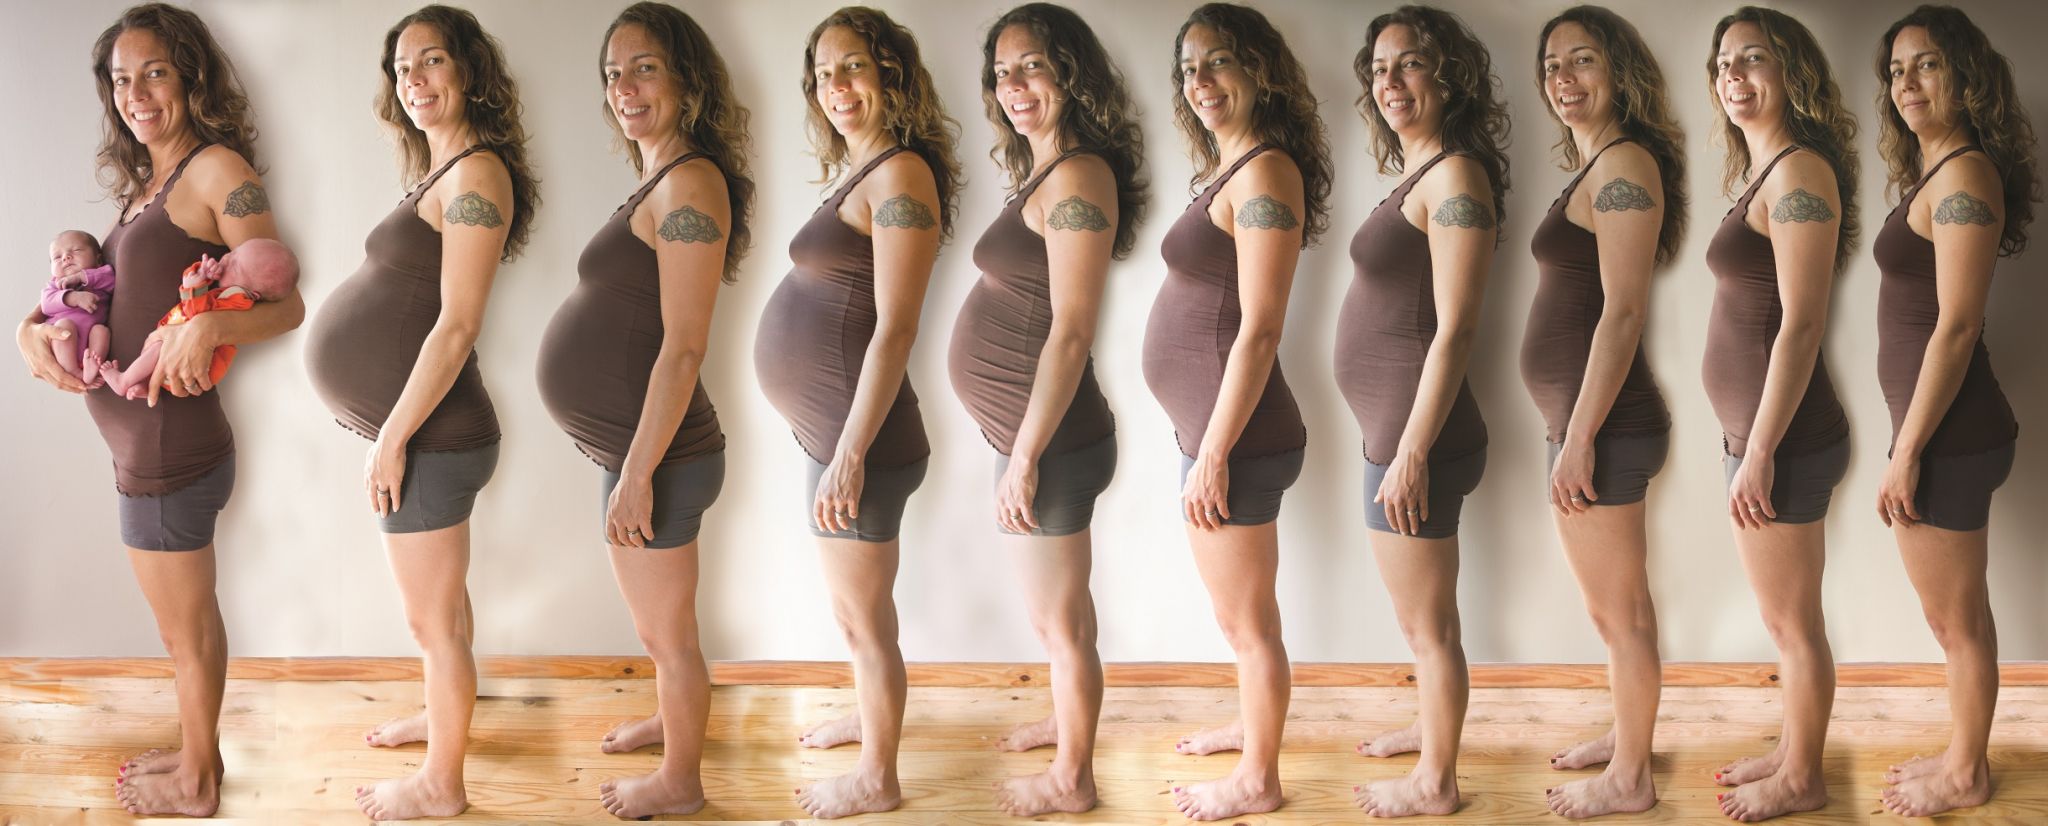 беременность 21 неделя ком в груди фото 34